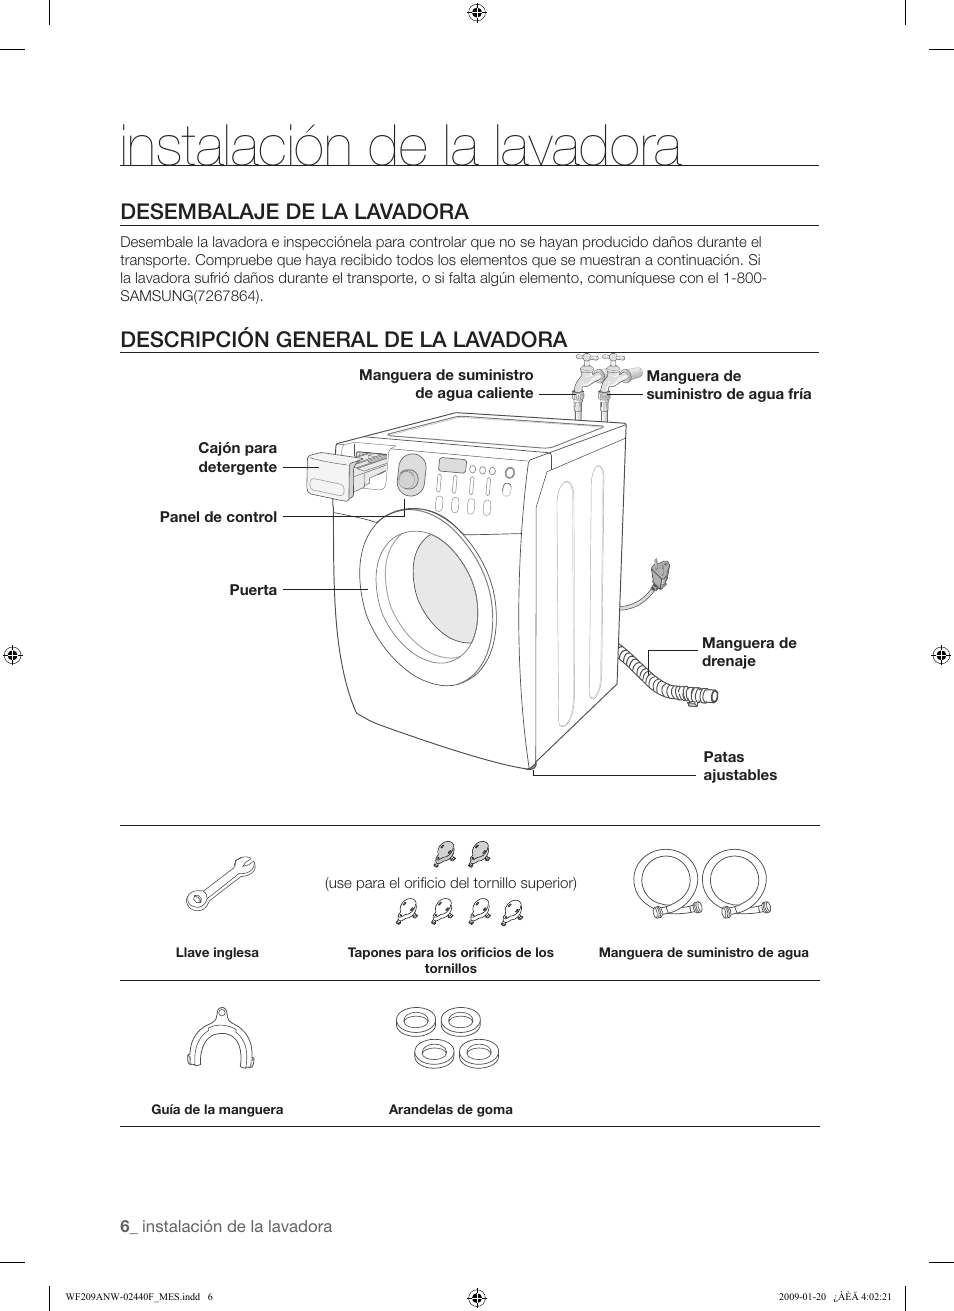 Instalación de la lavadora, Desembalaje de la lavadora, Descripción general  de la lavadora | Samsung WF209 User Manual | Page 34 / 56 | Original mode